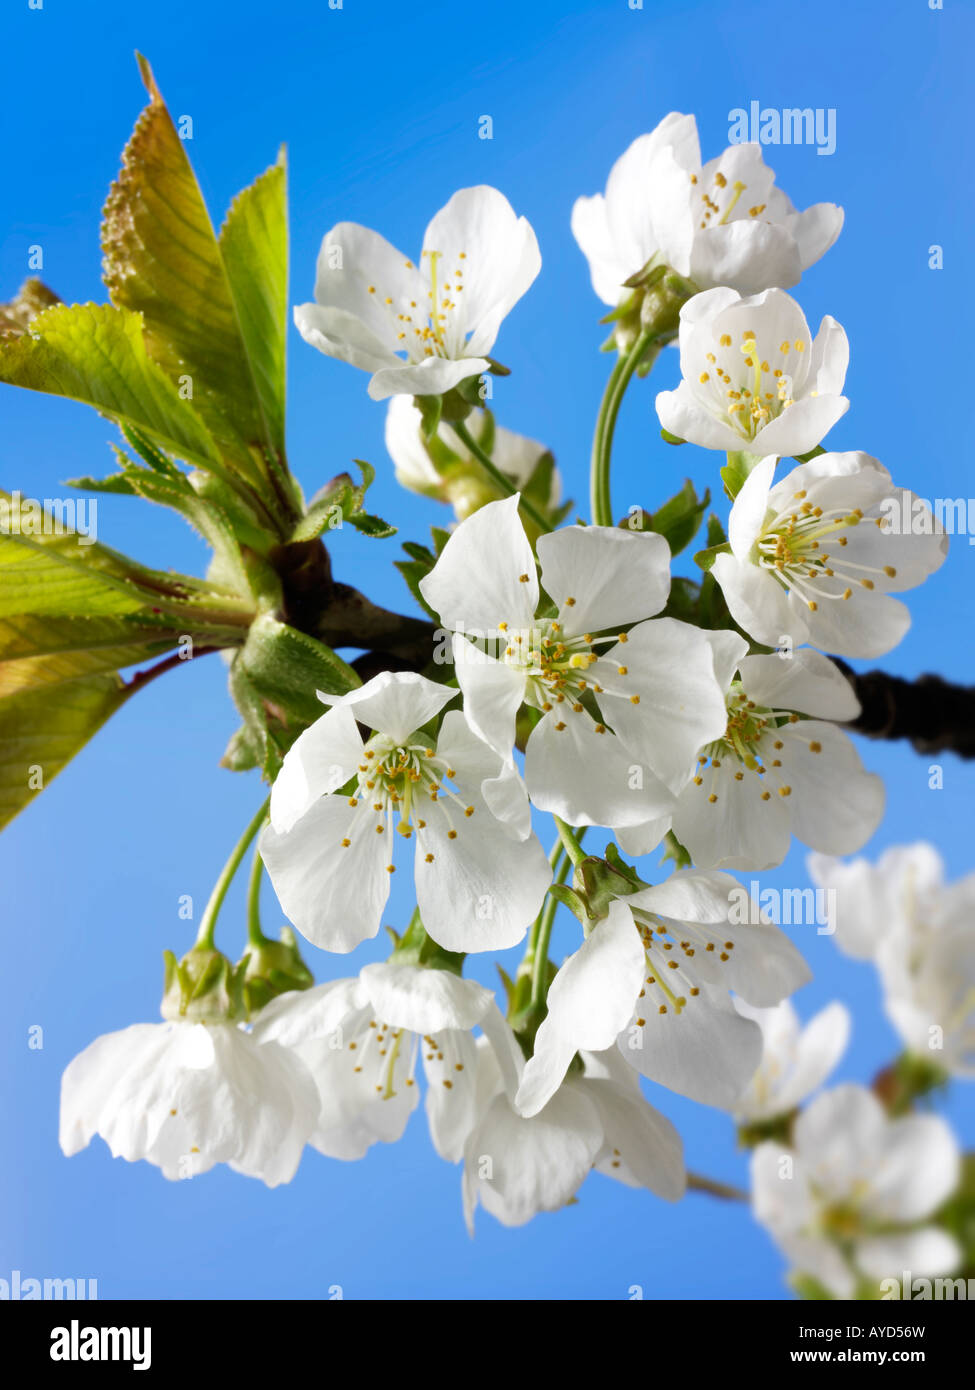 Foto di bianco fresco di fiori di ciliegio, fiori e petali freschi raccolti da un albero ciliegio Foto Stock